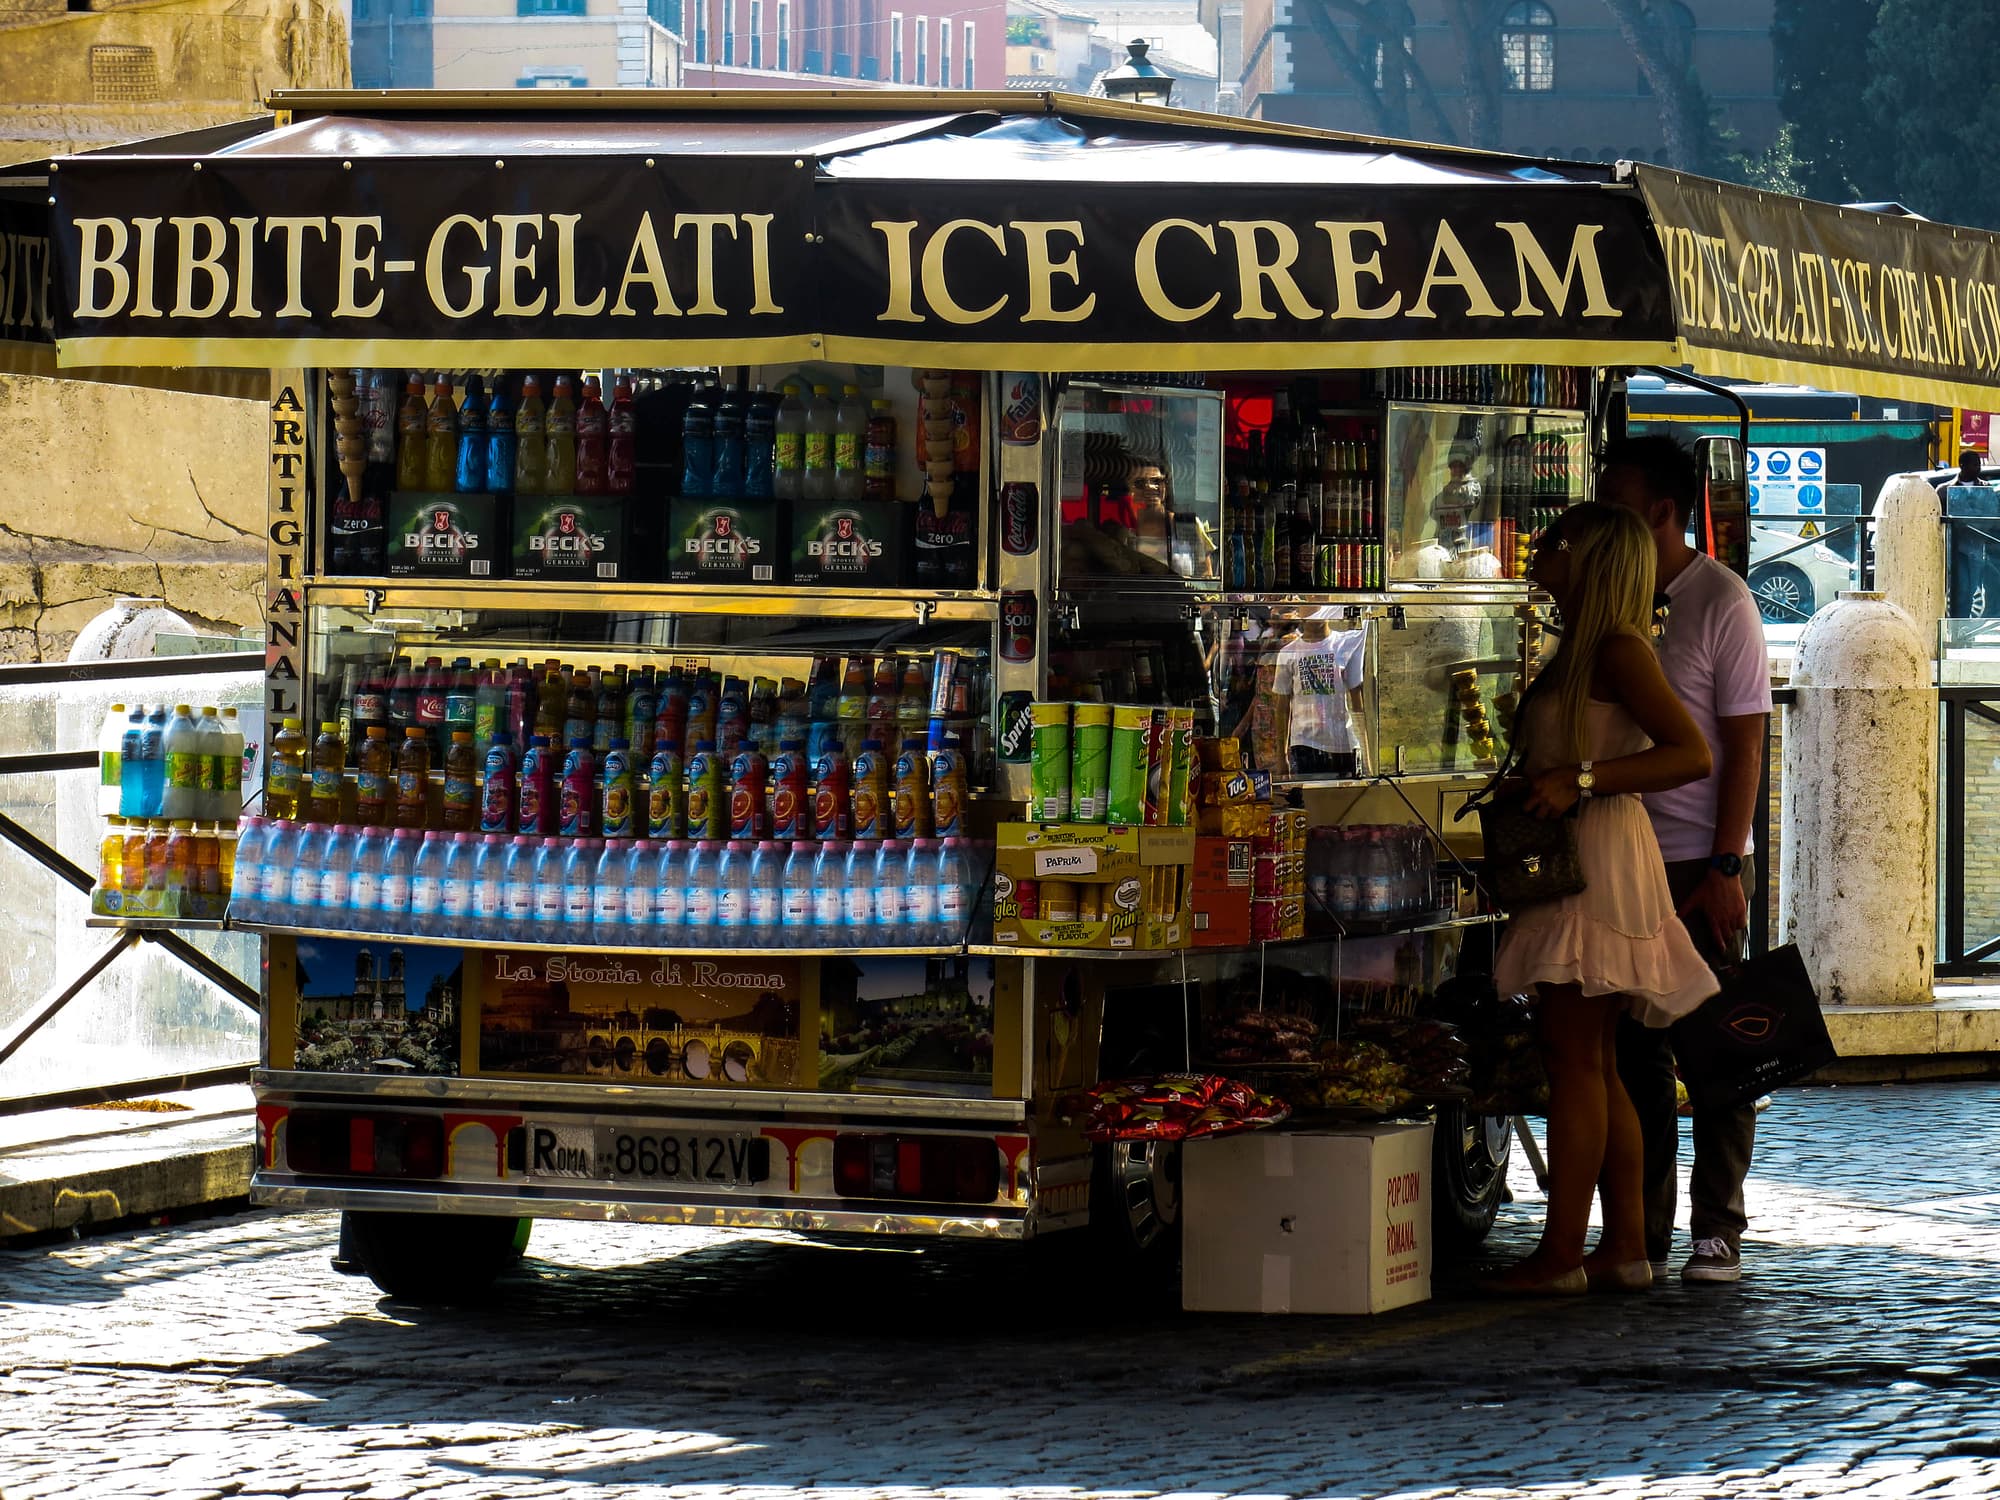 A gelato cart in Rome